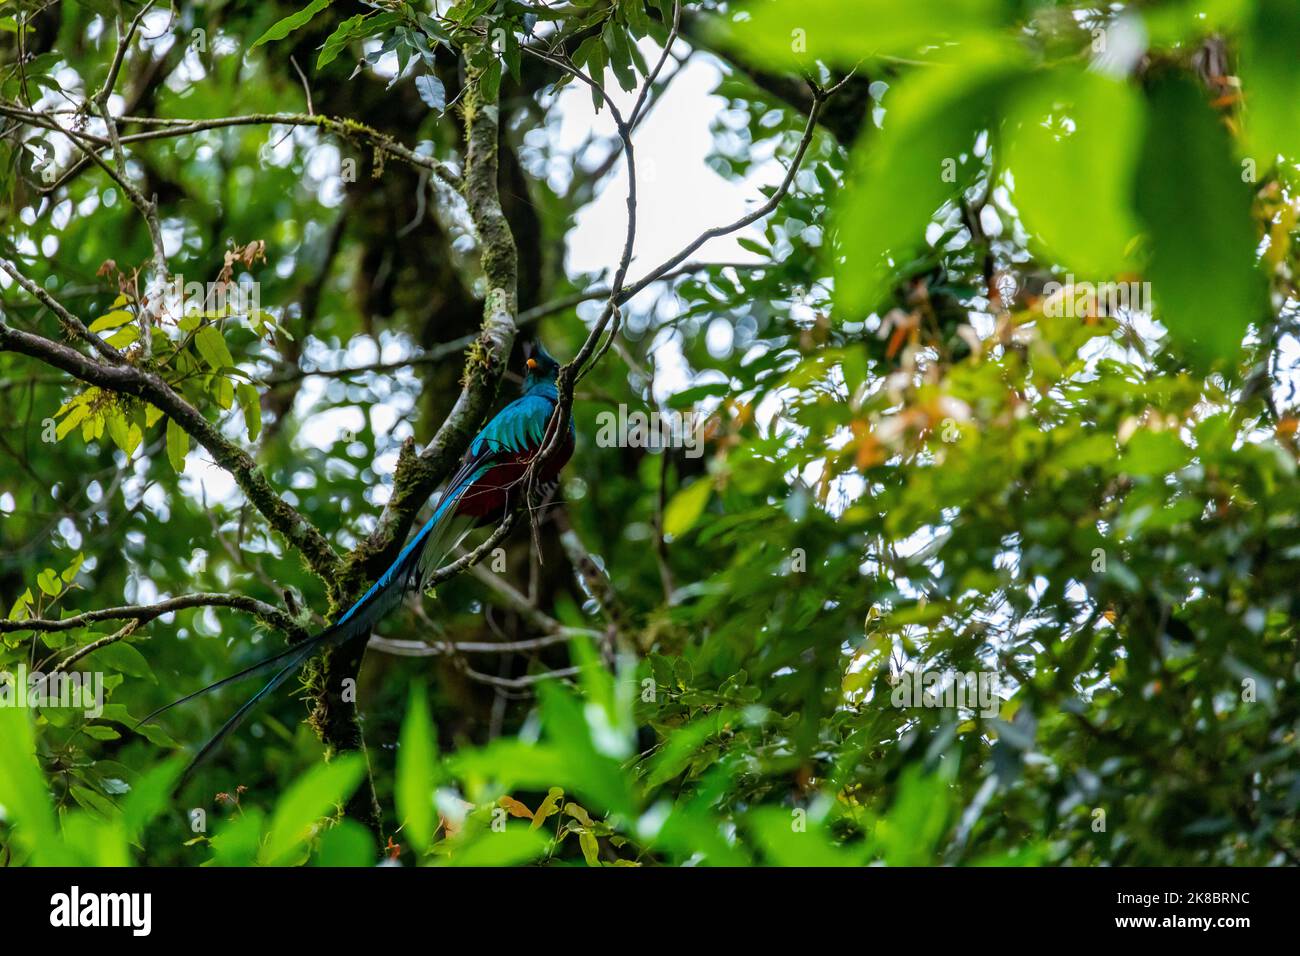 Risplendente Quetzal, Pharomachrus mocinno, Savegre in Costa Rica, con foresta verde sullo sfondo. Magnifico uccello rosso e verde sacro. Birdwatching Foto Stock